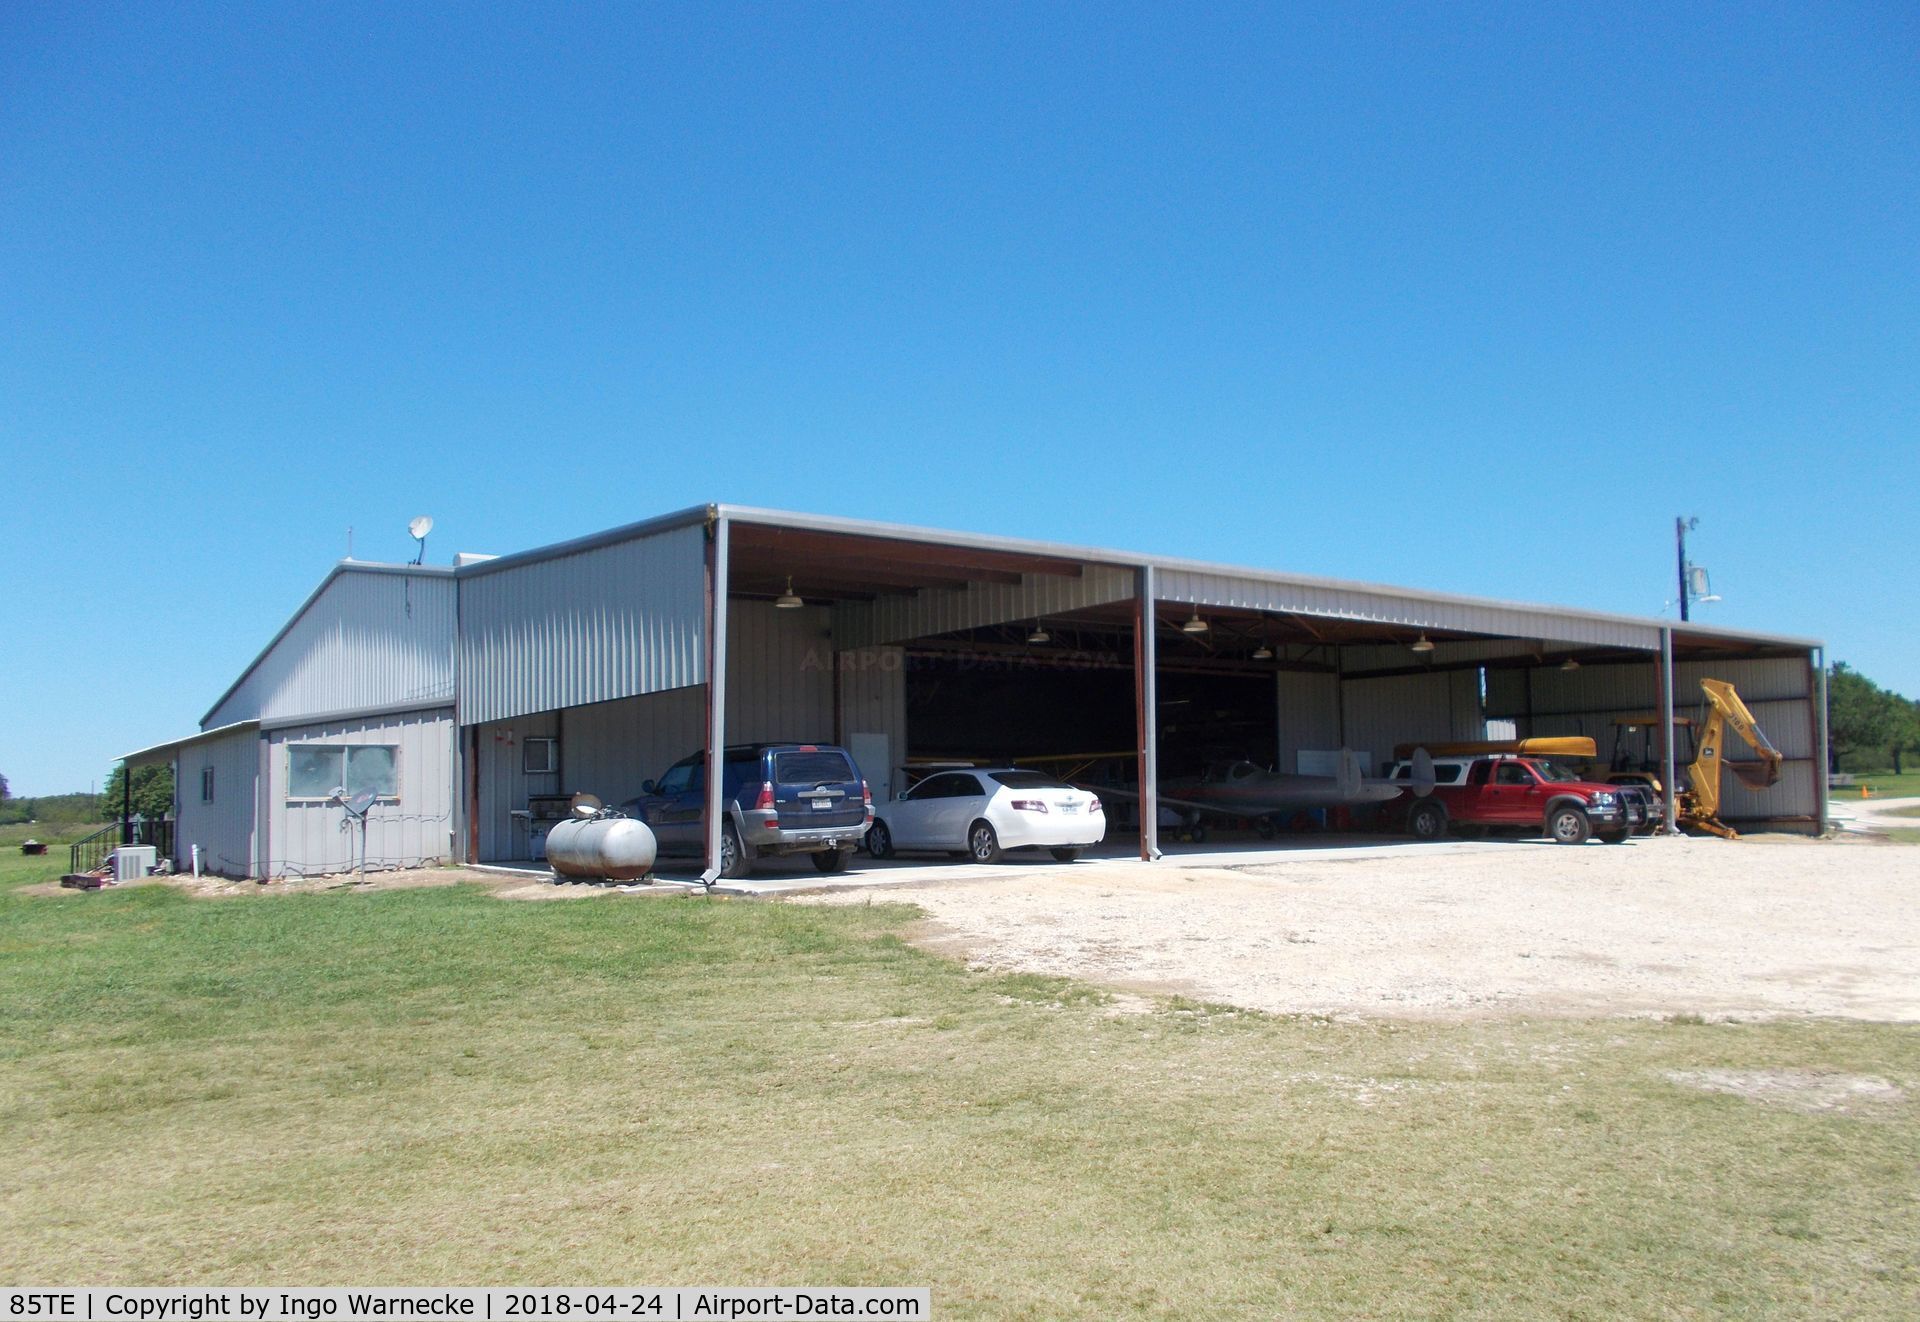 Old Kingsbury Aerodrome Airport (85TE) - the workshop hangar of the Pioneer Flight Museum at the Old Kingsbury Aerodrome, Kingsbury TX